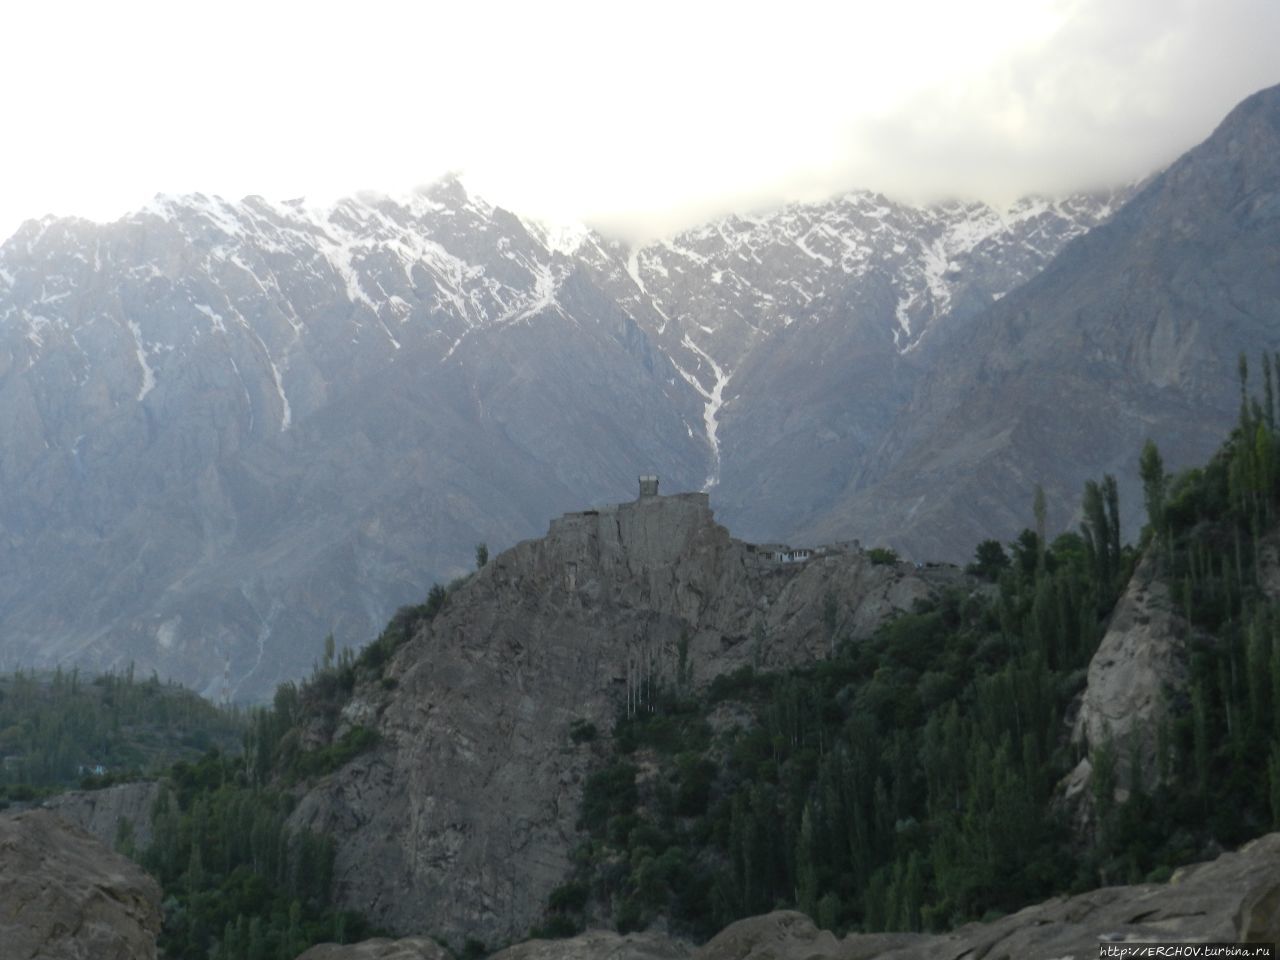 Пакистан. Ч — 22. Долина Хунза. Форт Алтит Каримабад, Пакистан